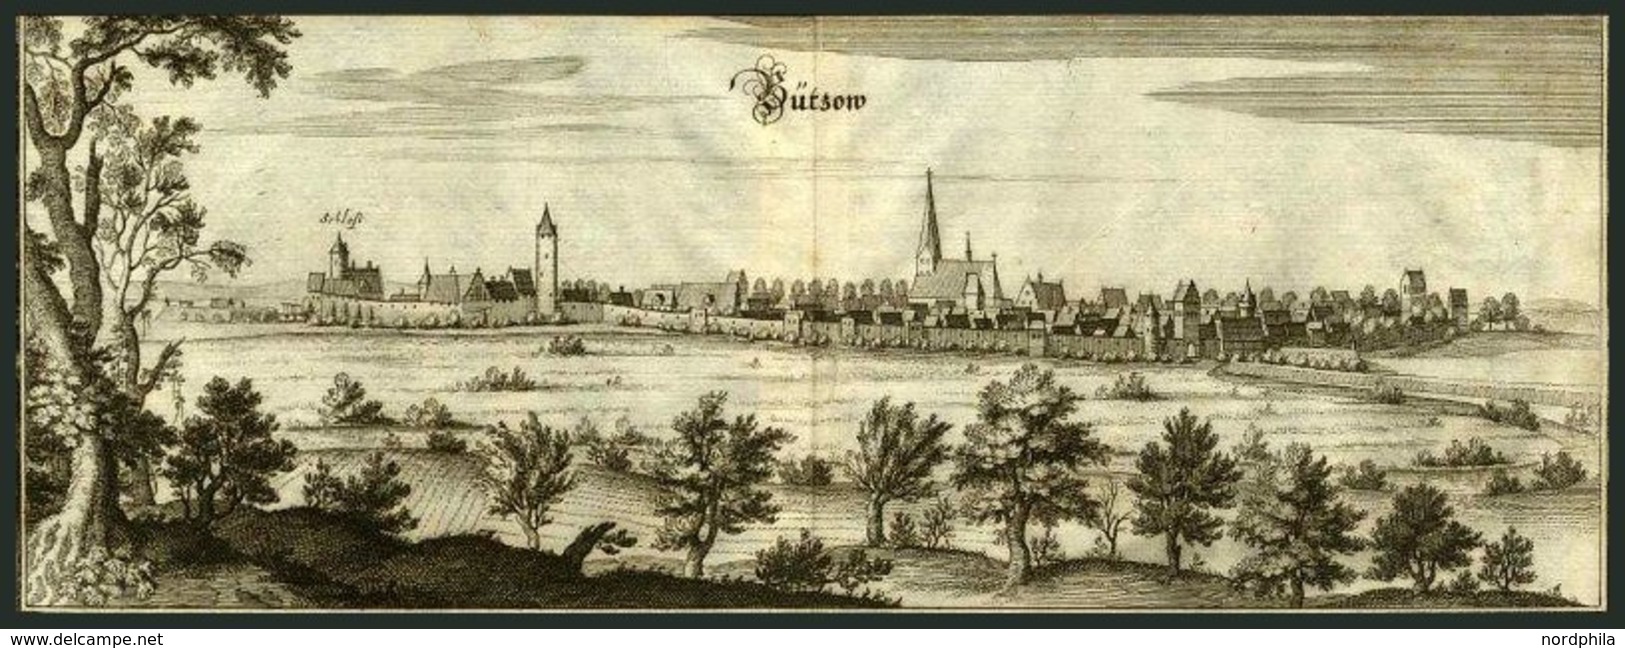 BUTZOW, Gesamtansicht, Kupferstich Von Merian Um 1645 - Litografia